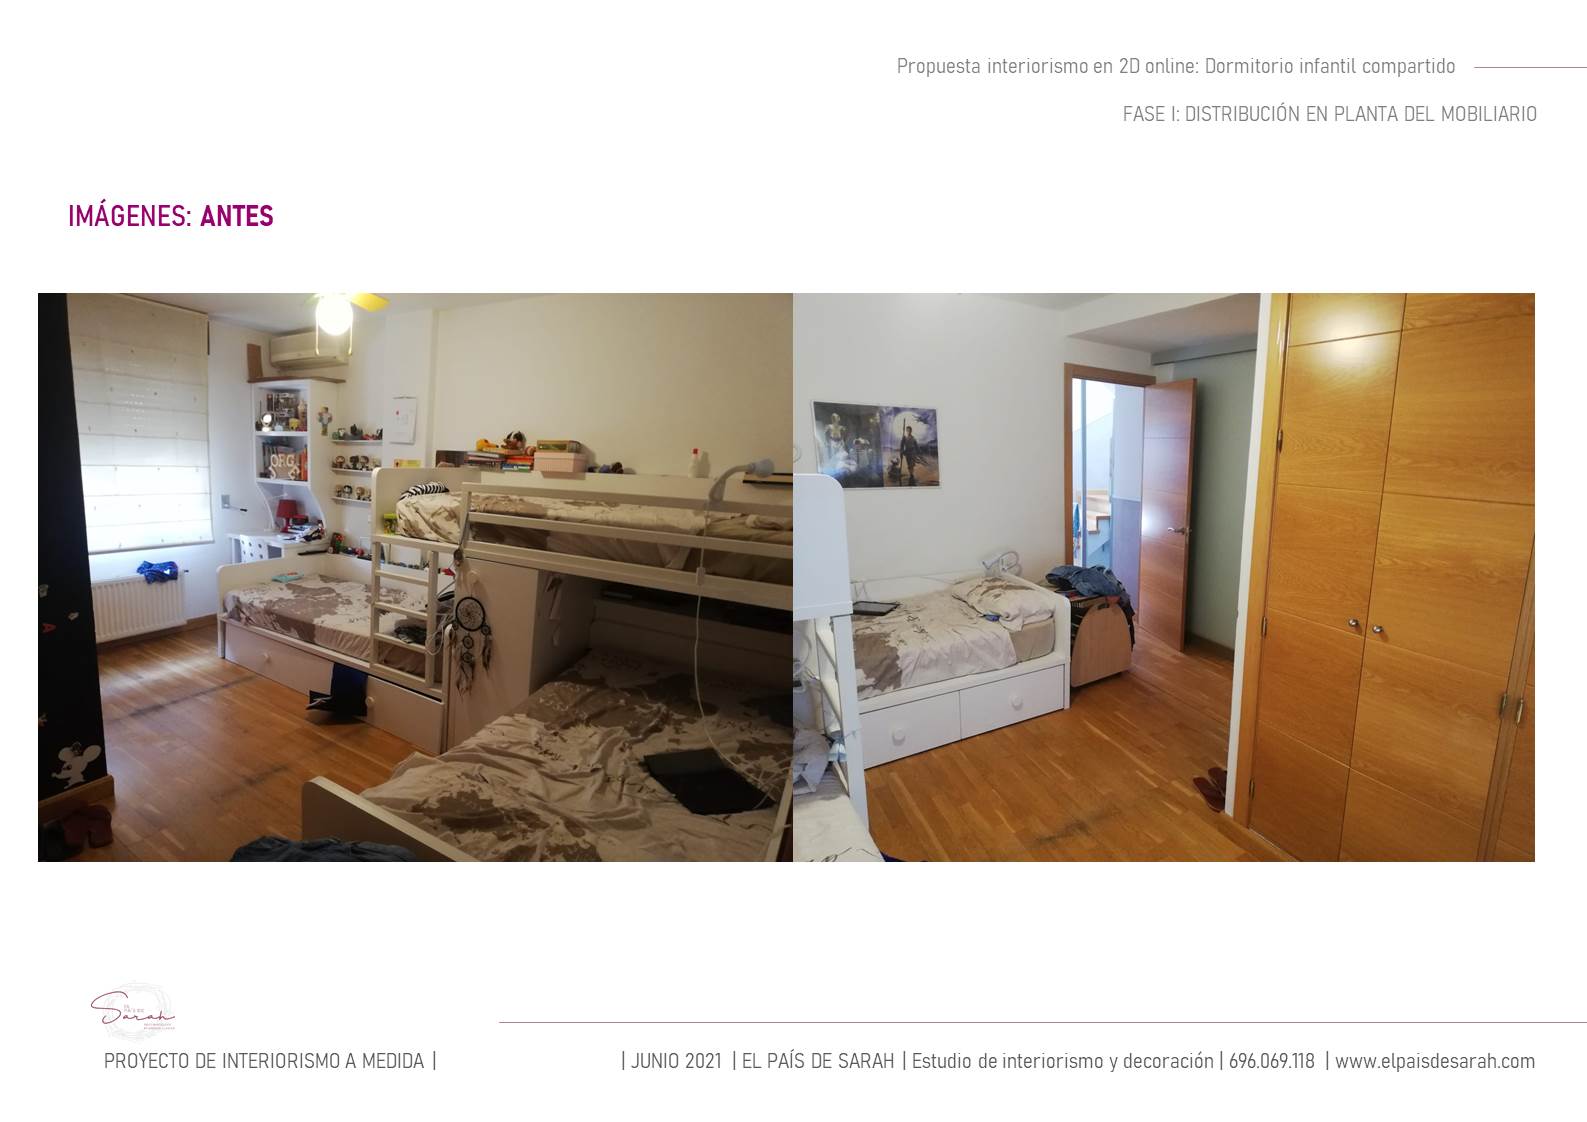 pre_proyecto_diseno_dormitorio_infantil_compartido_decoración_diseño_interiorismo-02